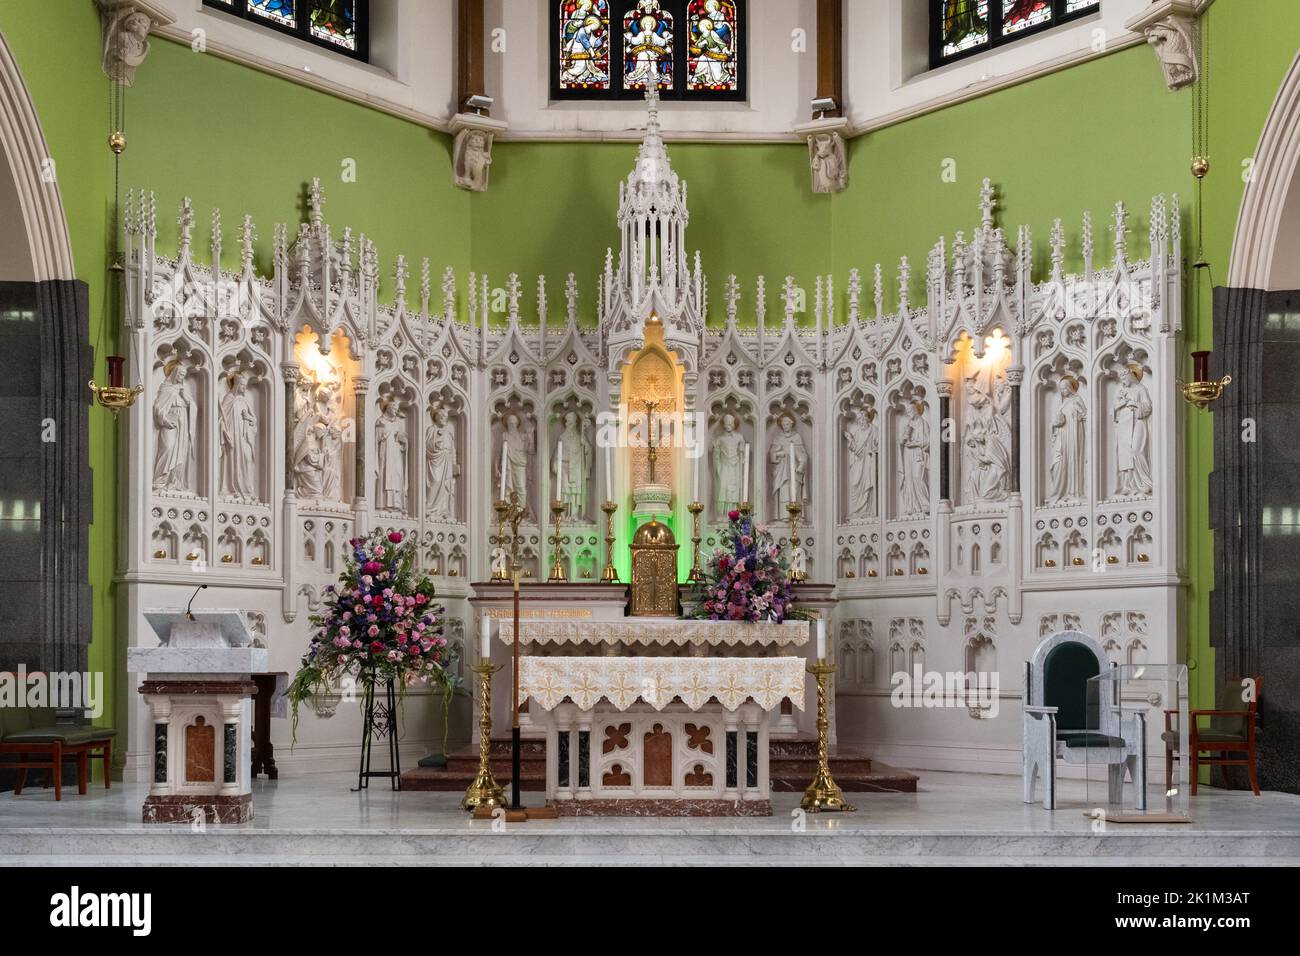 Église catholique St Alphonse haute autel et reredos à dos pinnacré - Calton, Glasgow, Écosse, Royaume-Uni Banque D'Images